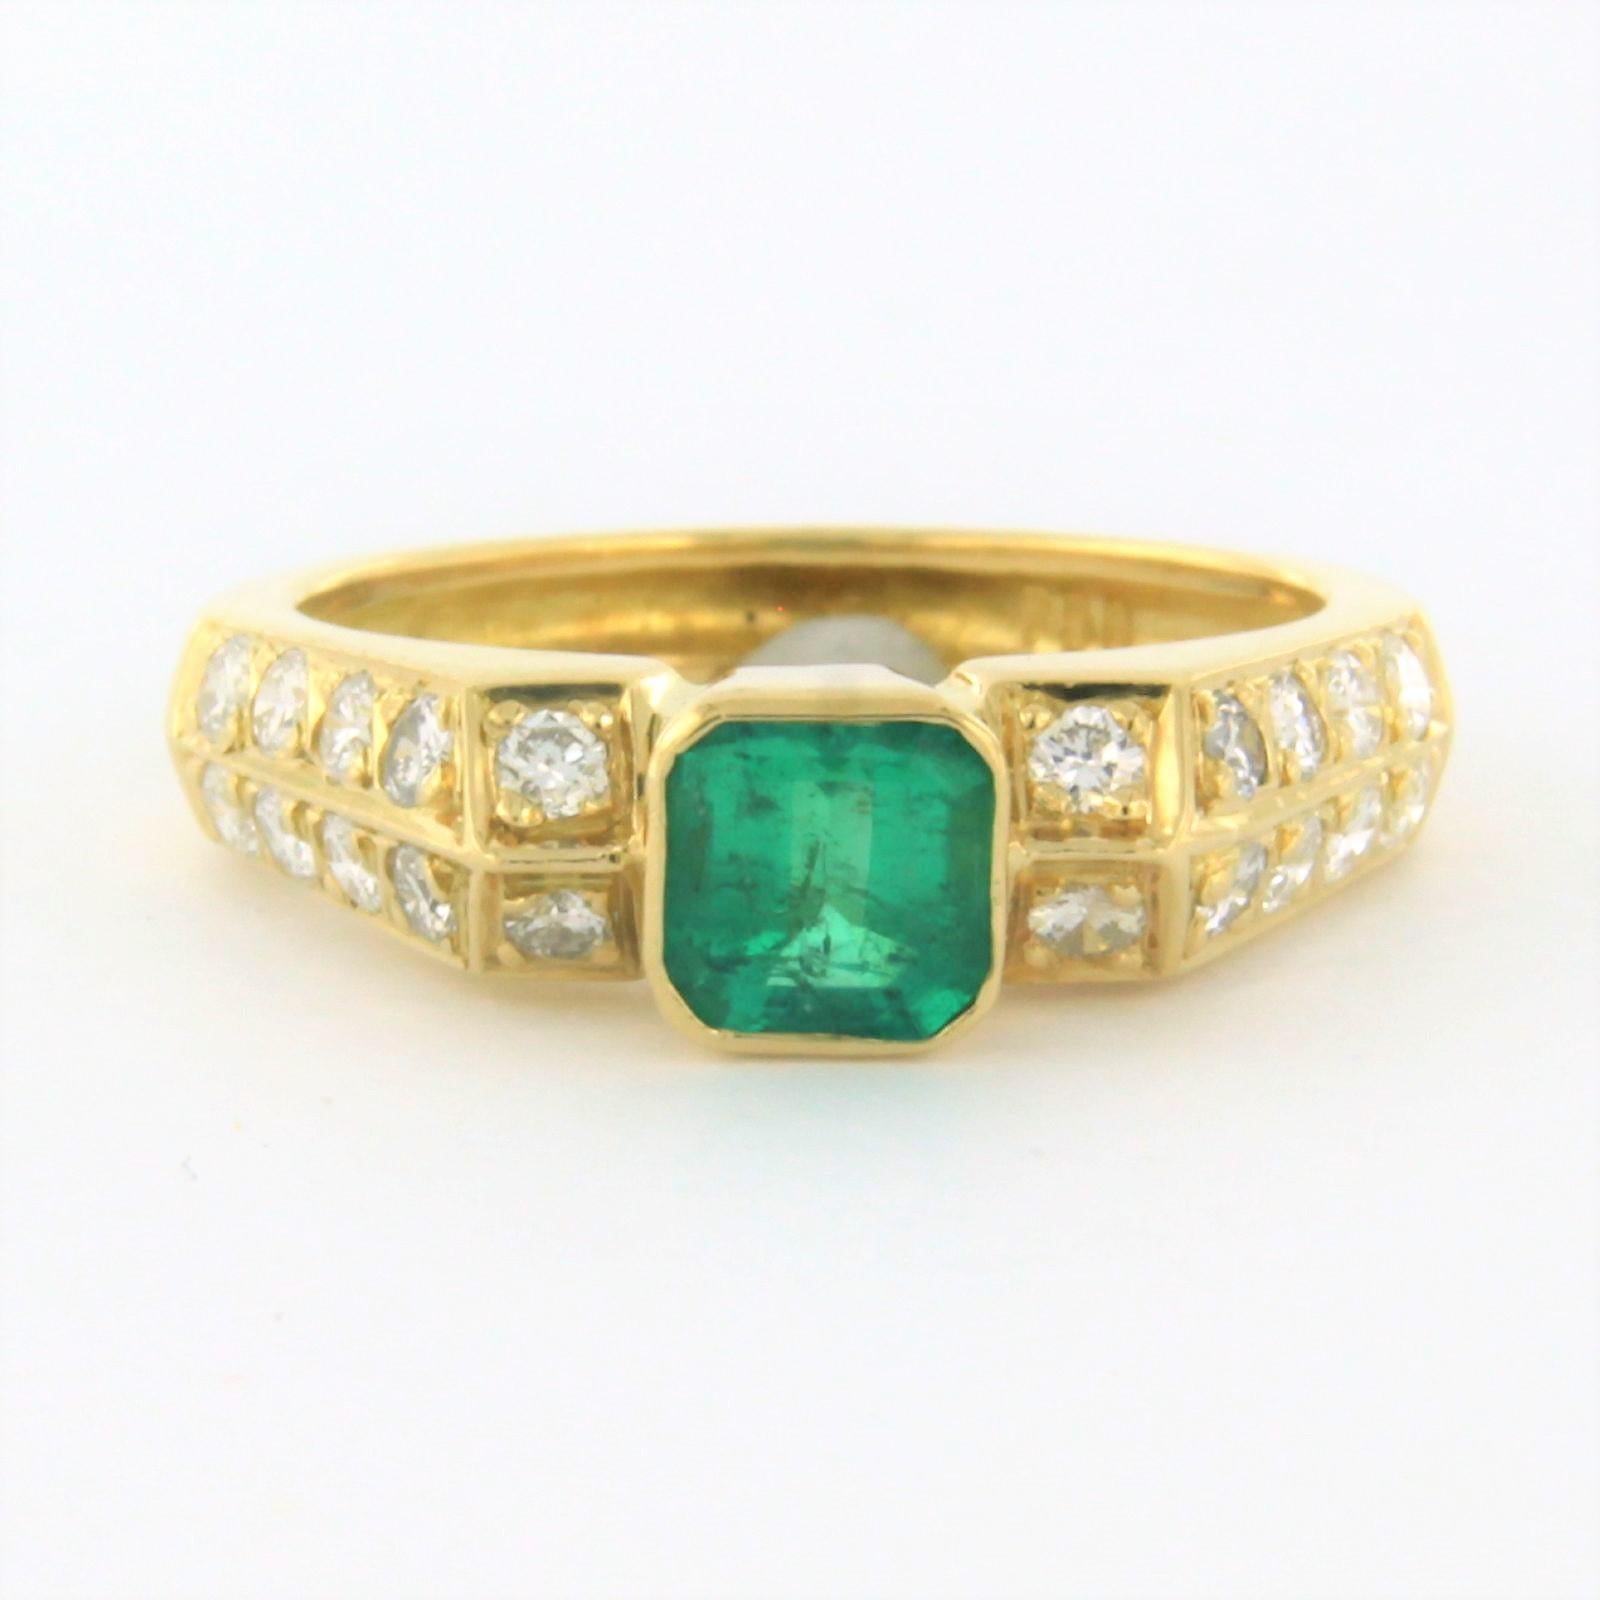 Ring aus 18 kt Gelbgold, besetzt mit einem Smaragd und einem Diamanten im Brillantschliff - Ringgröße U.S. 5.25 - EU. 16(50)

ausführliche Beschreibung

Die Oberseite des Rings ist 5,5 mm breit und 5,0 mm hoch.

Gewicht 4,4 Gramm

Ringgröße U.S.